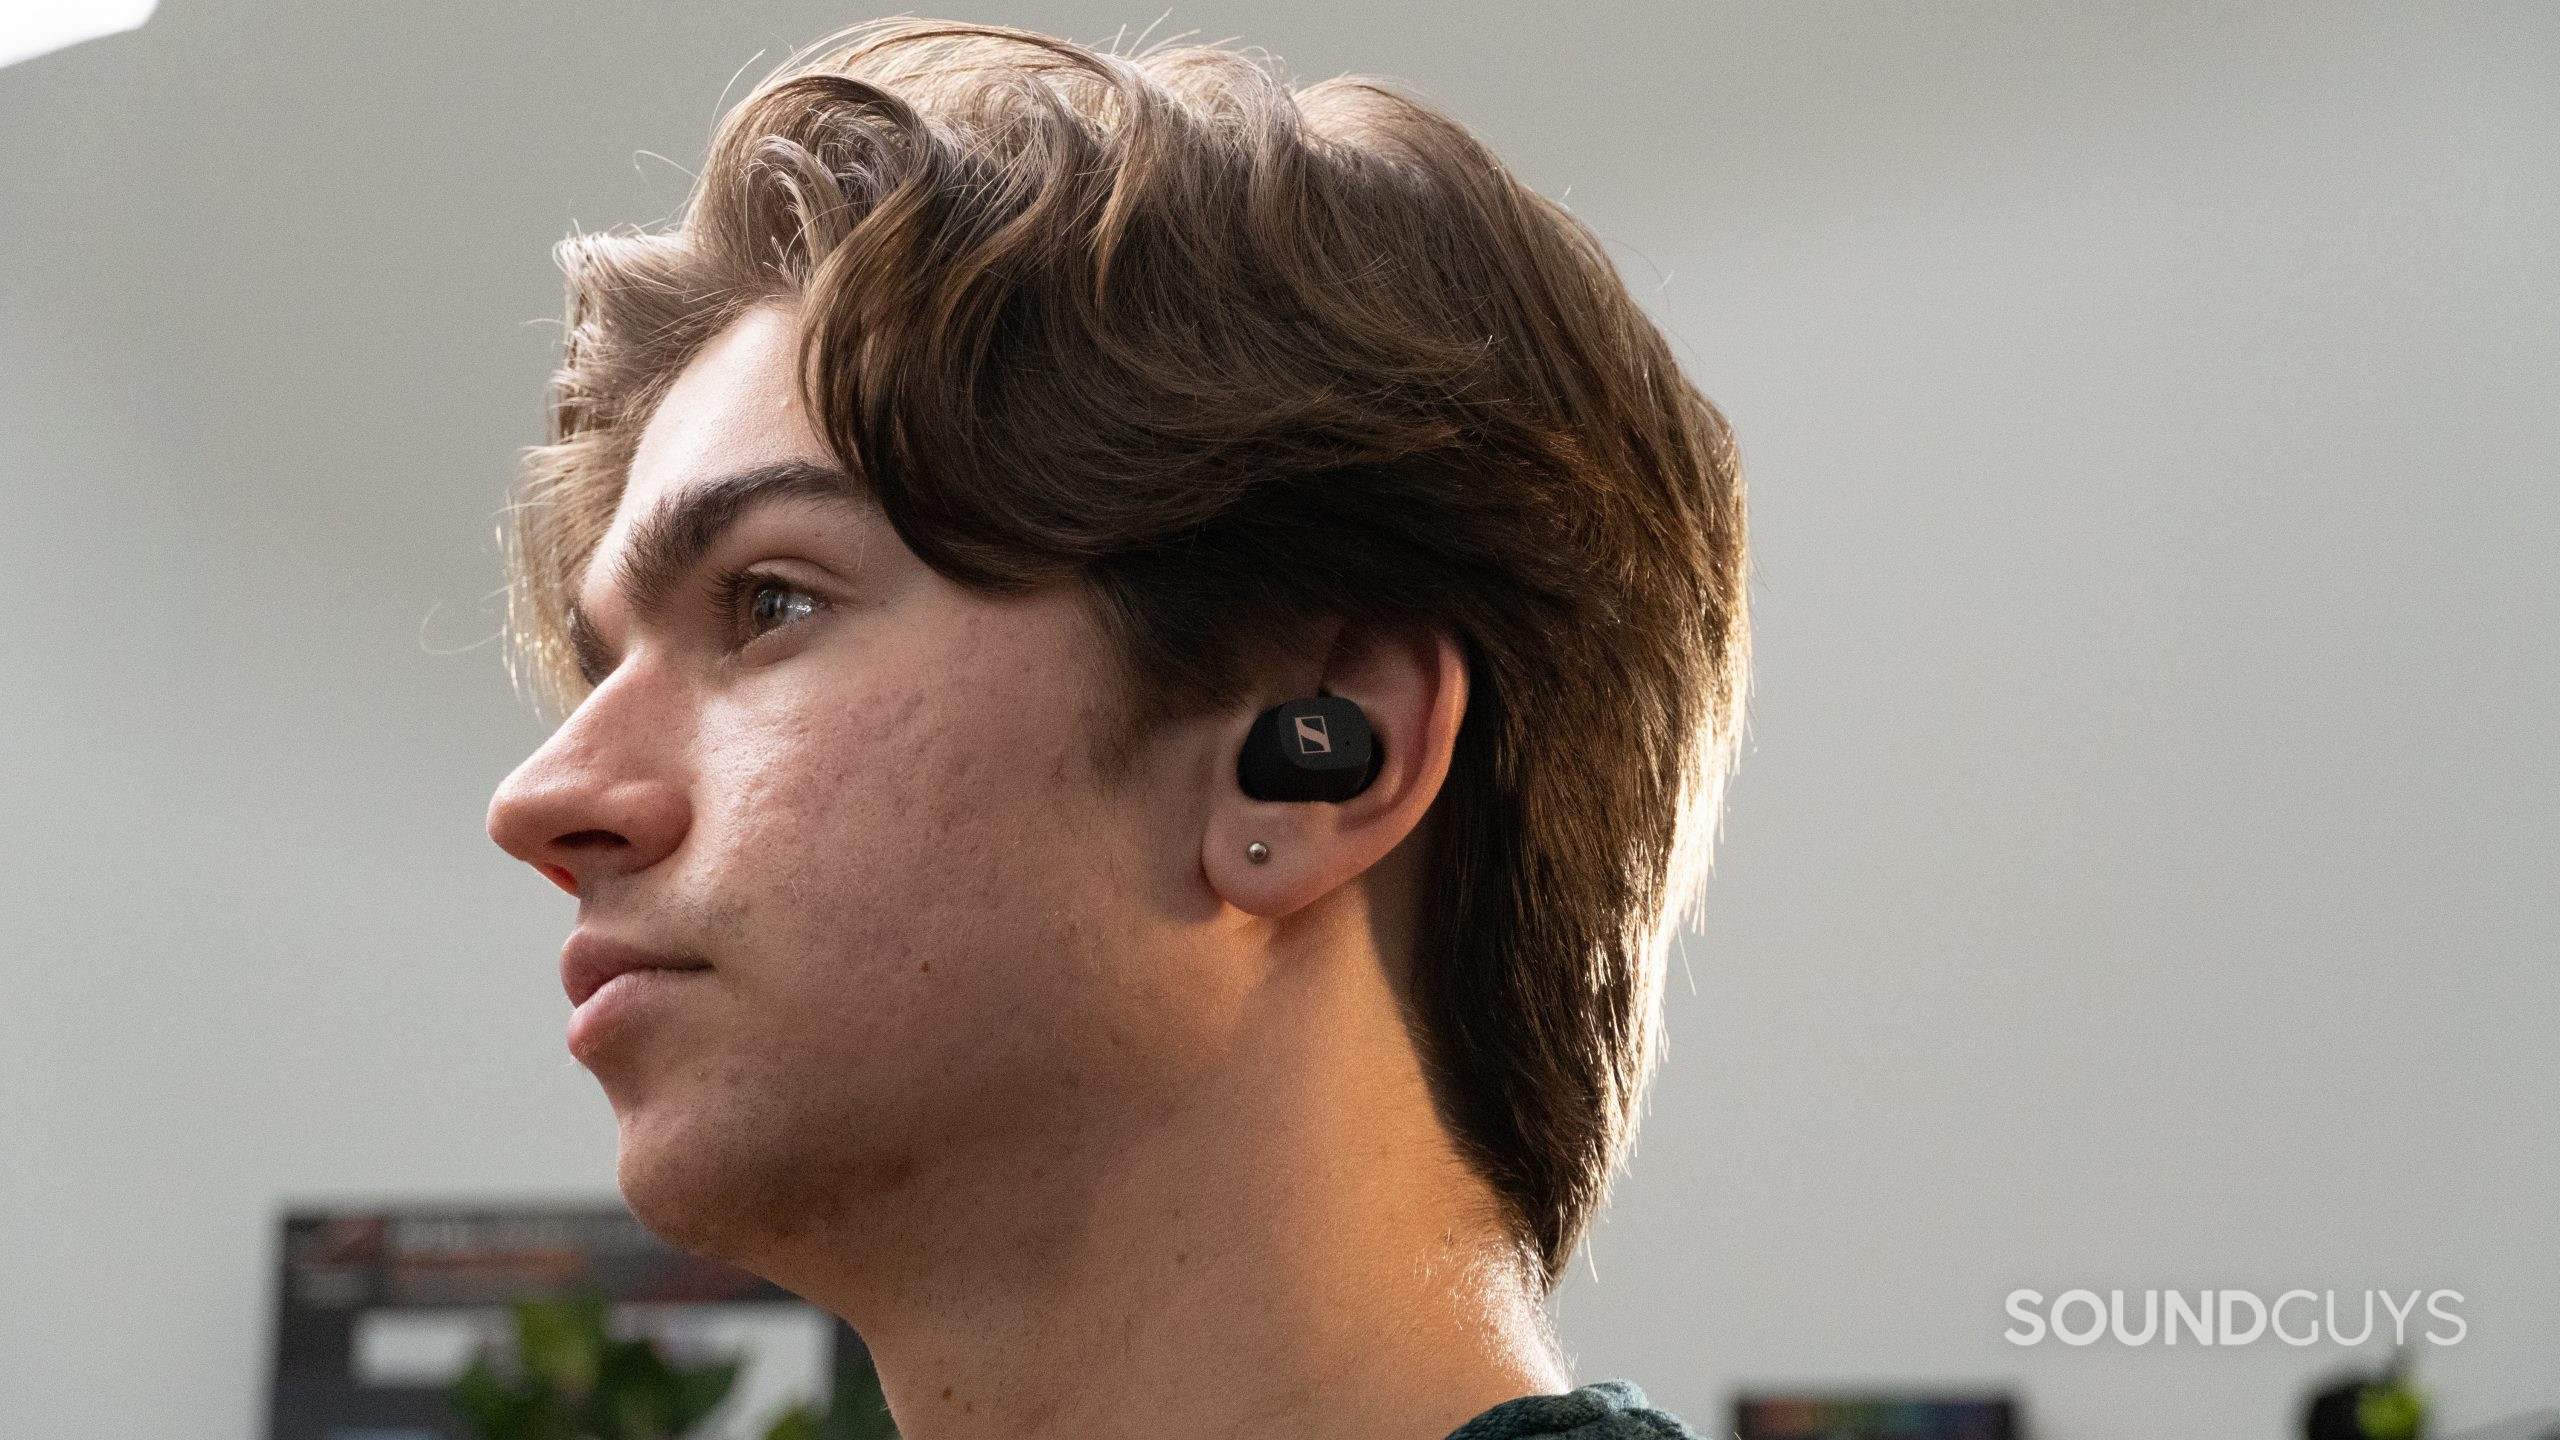 Sennheiser Sport True Wireless earbuds inside a mans ear as he looks to the left